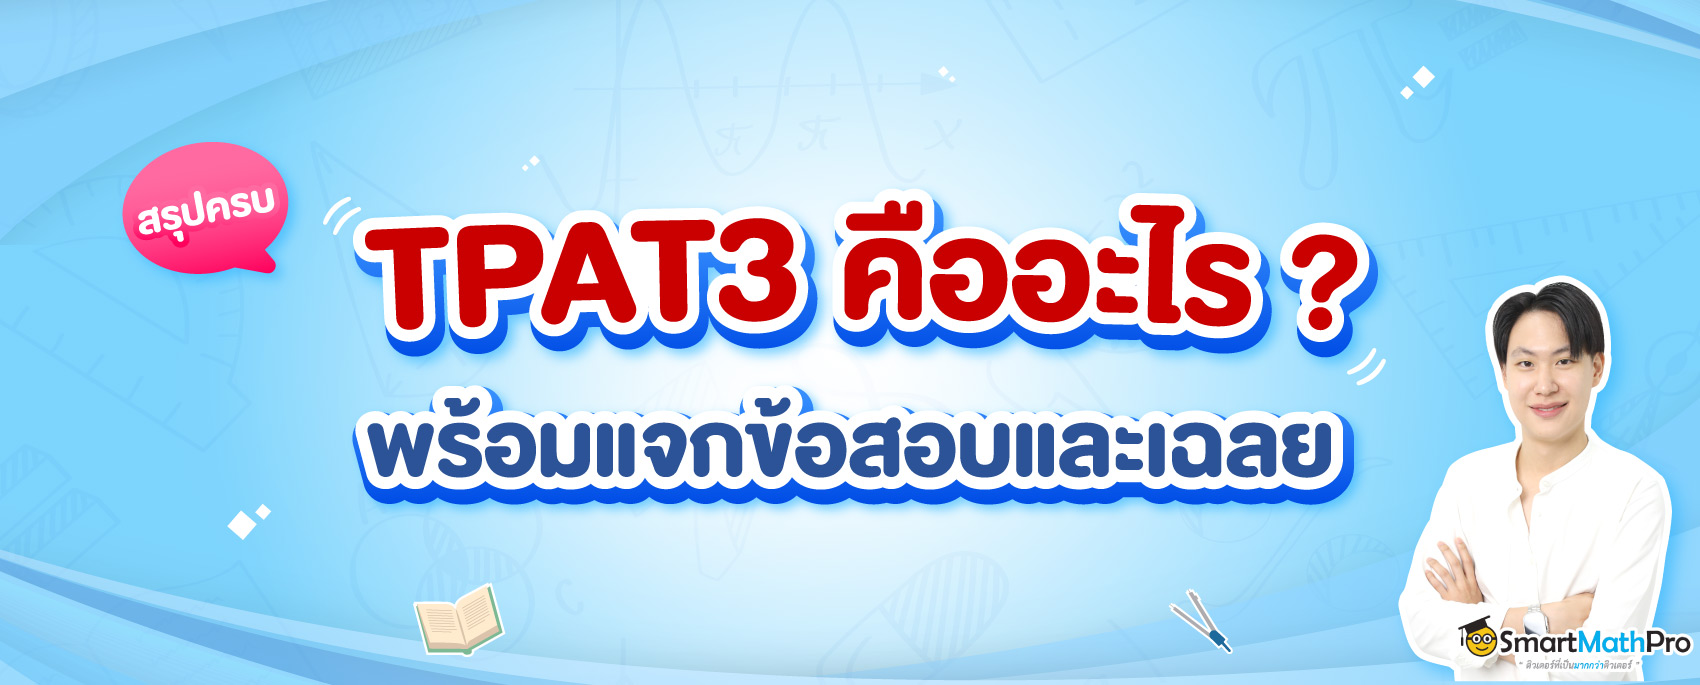 TPAT3 คืออะไร เข้าคณะอะไรได้บ้าง พร้อมแนวข้อสอบและเฉลย